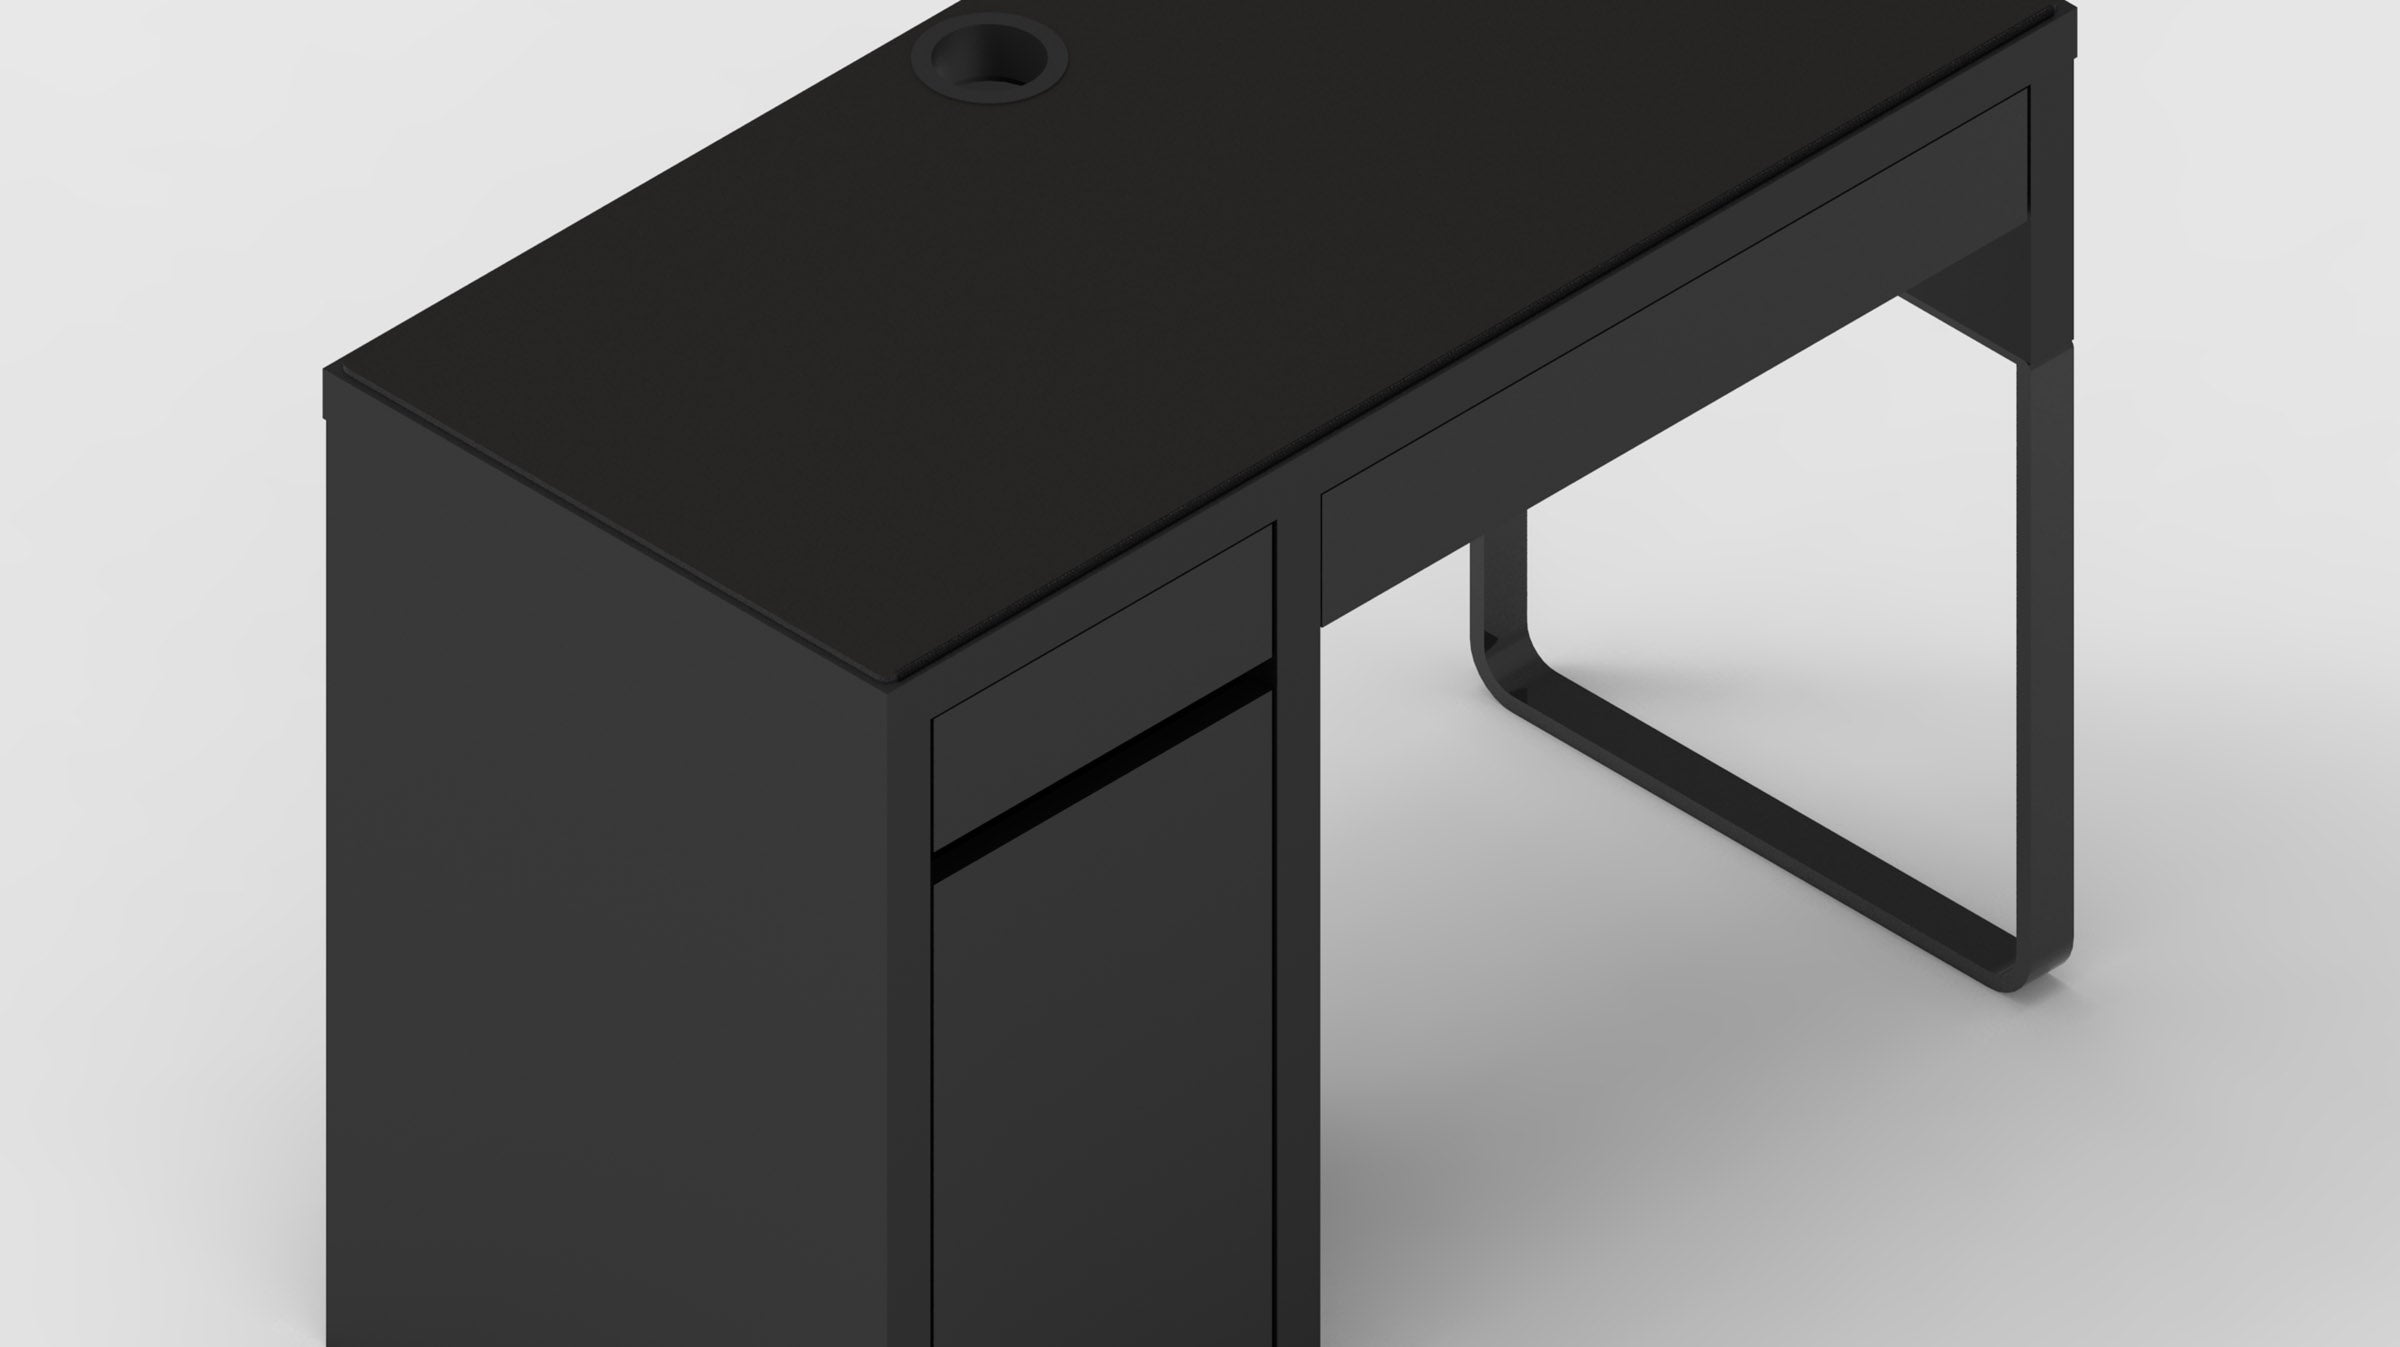 MK Black IKEA MICKE Desk Mat (41" / 105 cm) Full-desk Mouse Pad MKK7WLDO2D |58938|